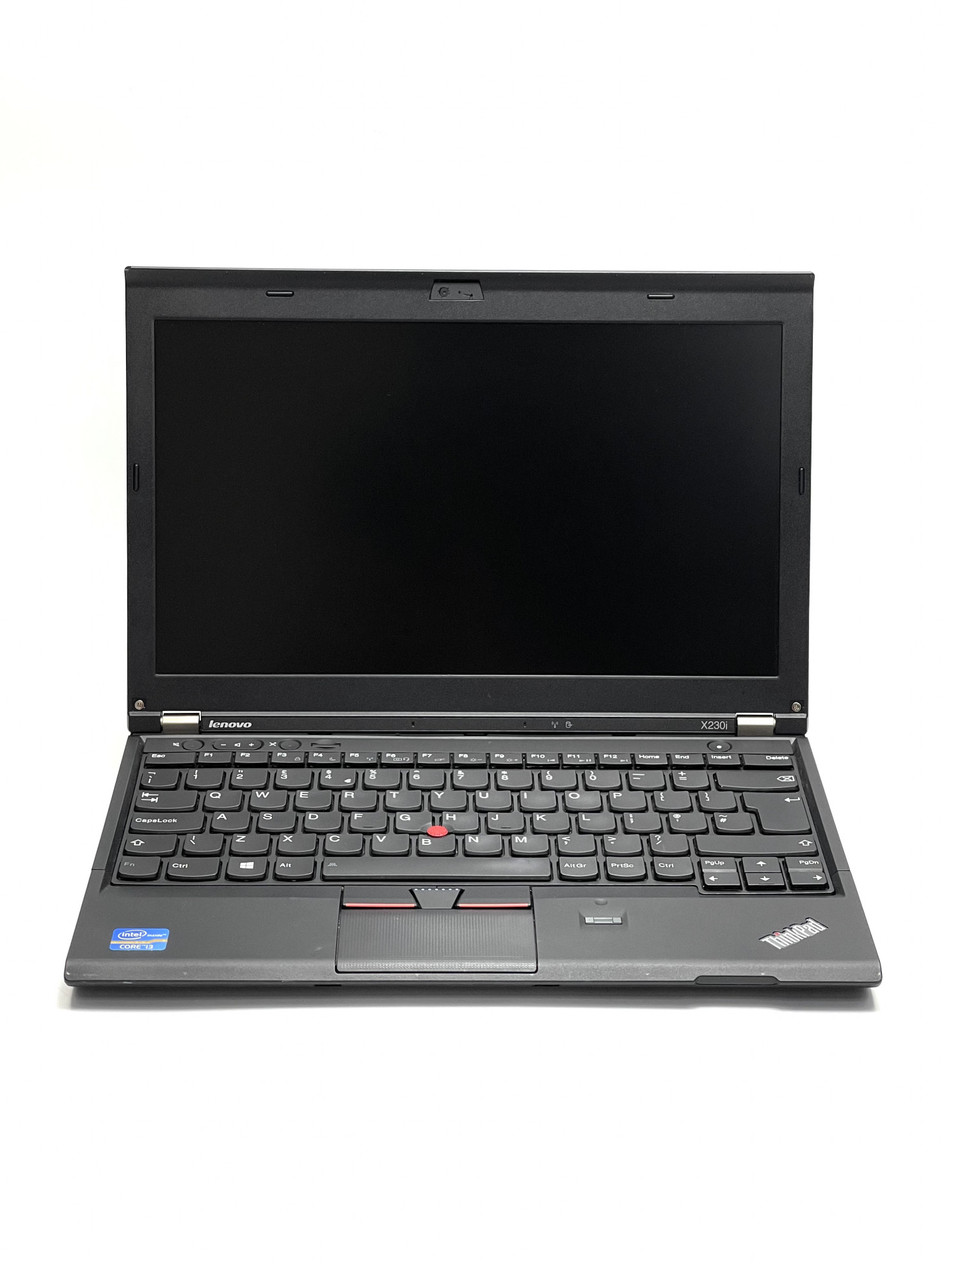 Ноутбук Lenovo ThinkPad x230i 12,5 Intel Core i3 8 Гб 120 Гб Refurbished